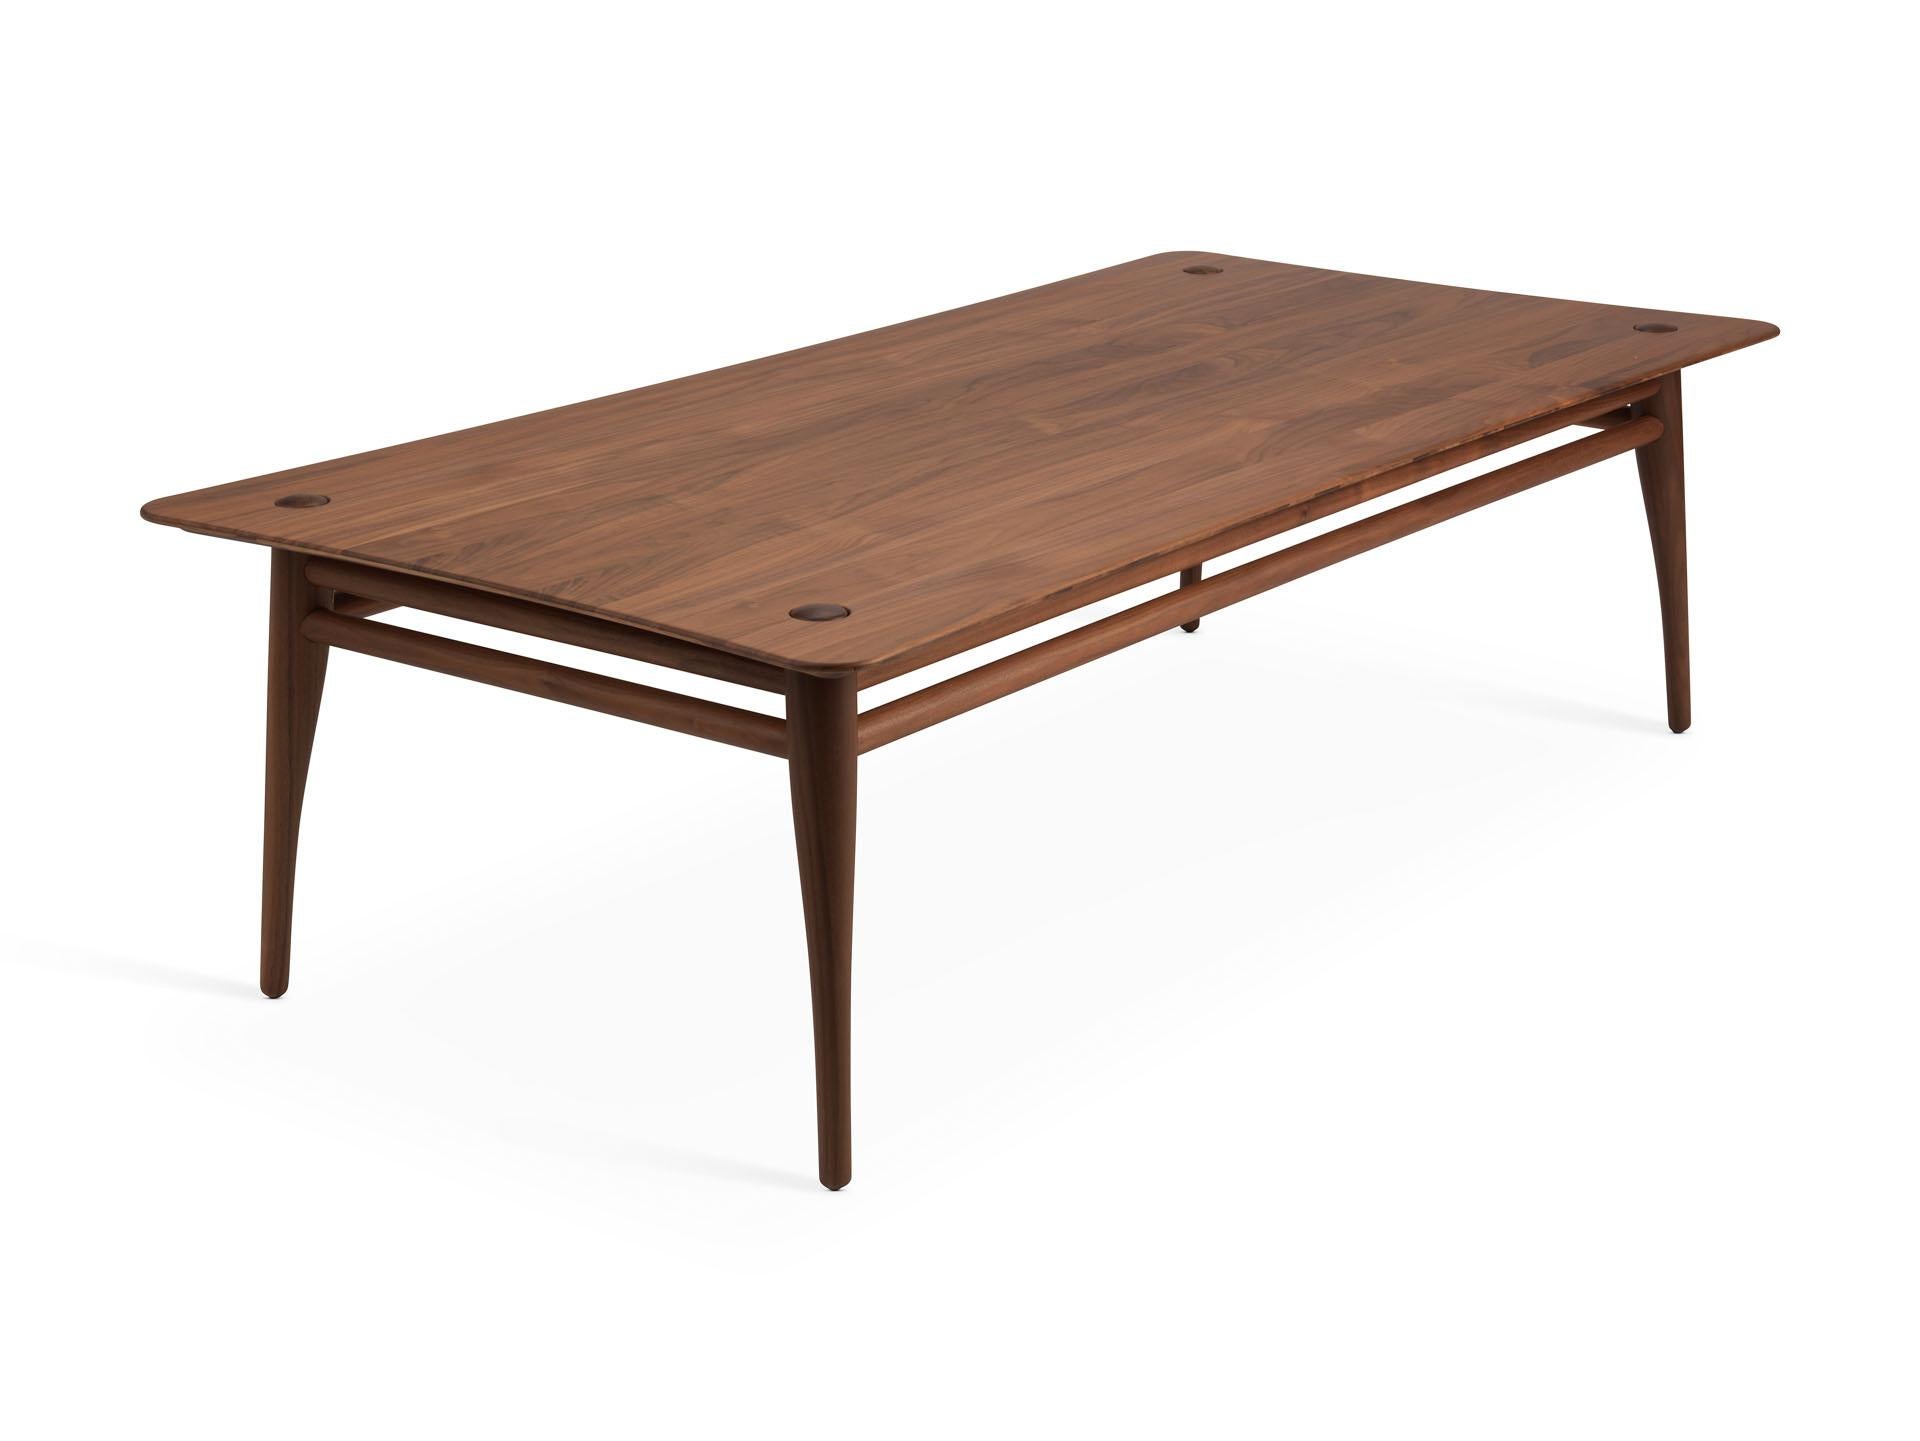 Chilgrove est une série de tables basses fabriquées à partir d'un cadre et d'un plateau en bois massif légèrement incurvé. Le cadre en bois situé sous la surface comporte quatre pieds de forme organique qui dépassent élégamment de la surface de la